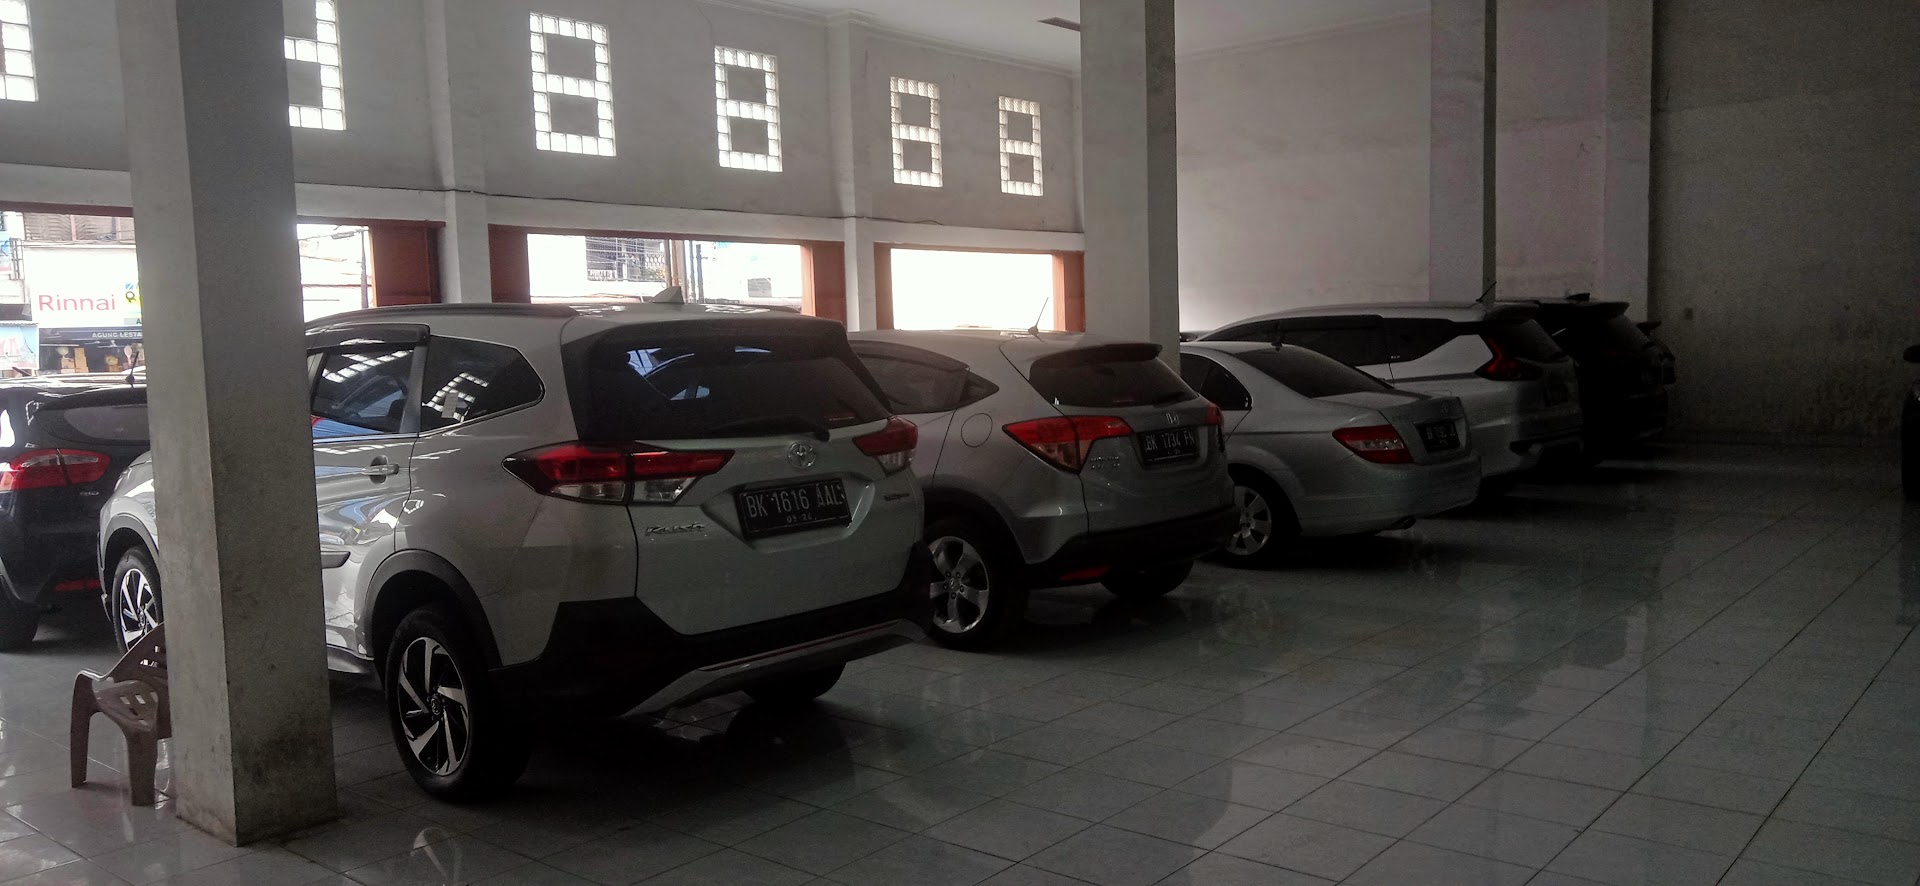 Indola Mobil - Jual Beli Mobil Bekas Berkualitas Medan Photo